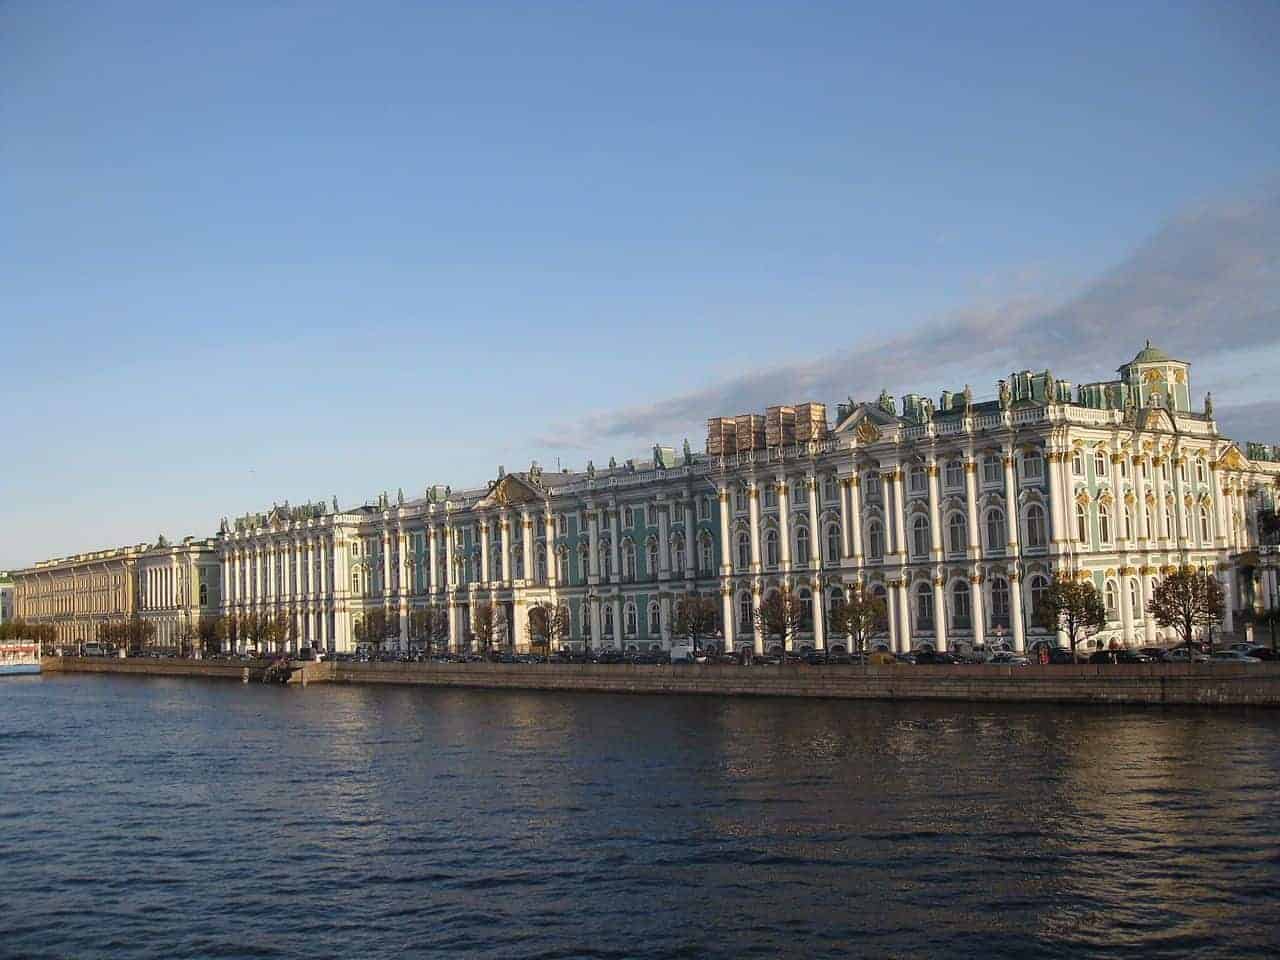 Conocer el Terraplén del Palacio en San Petersburgo; Visitar el Terraplén del Palacio en San Petersburgo; Recorrer el Terraplén del Palacio en San Petersburgo